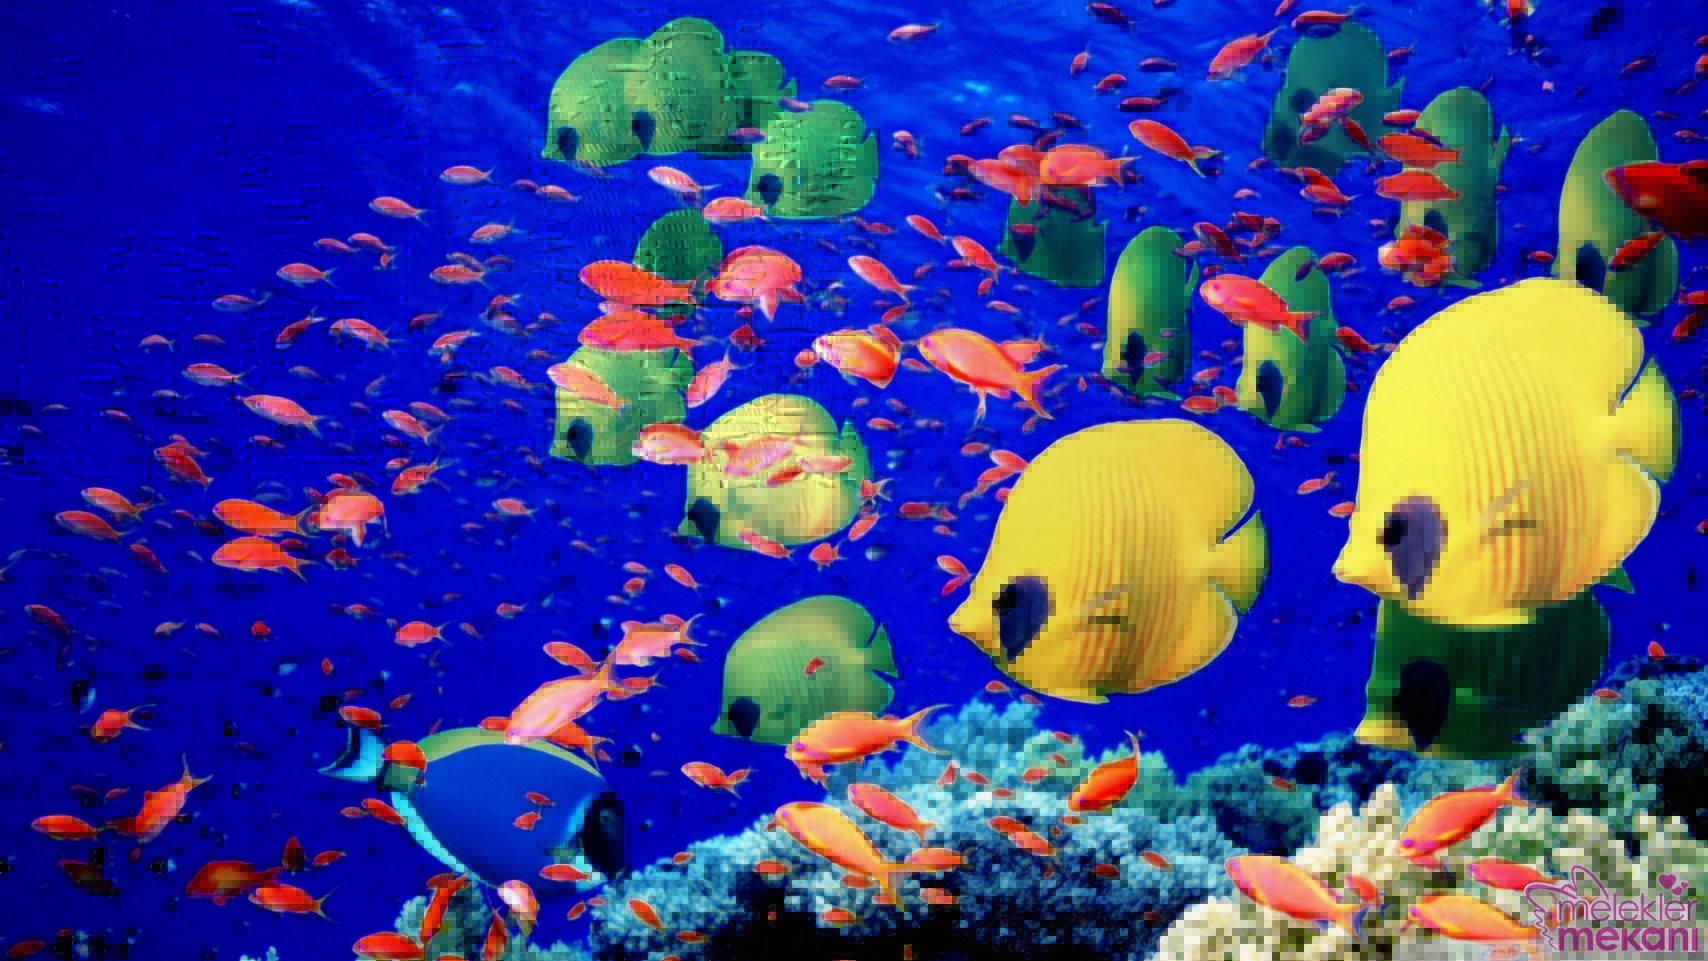 deniz altında çekilmiş en güzel resimler (1).jpg